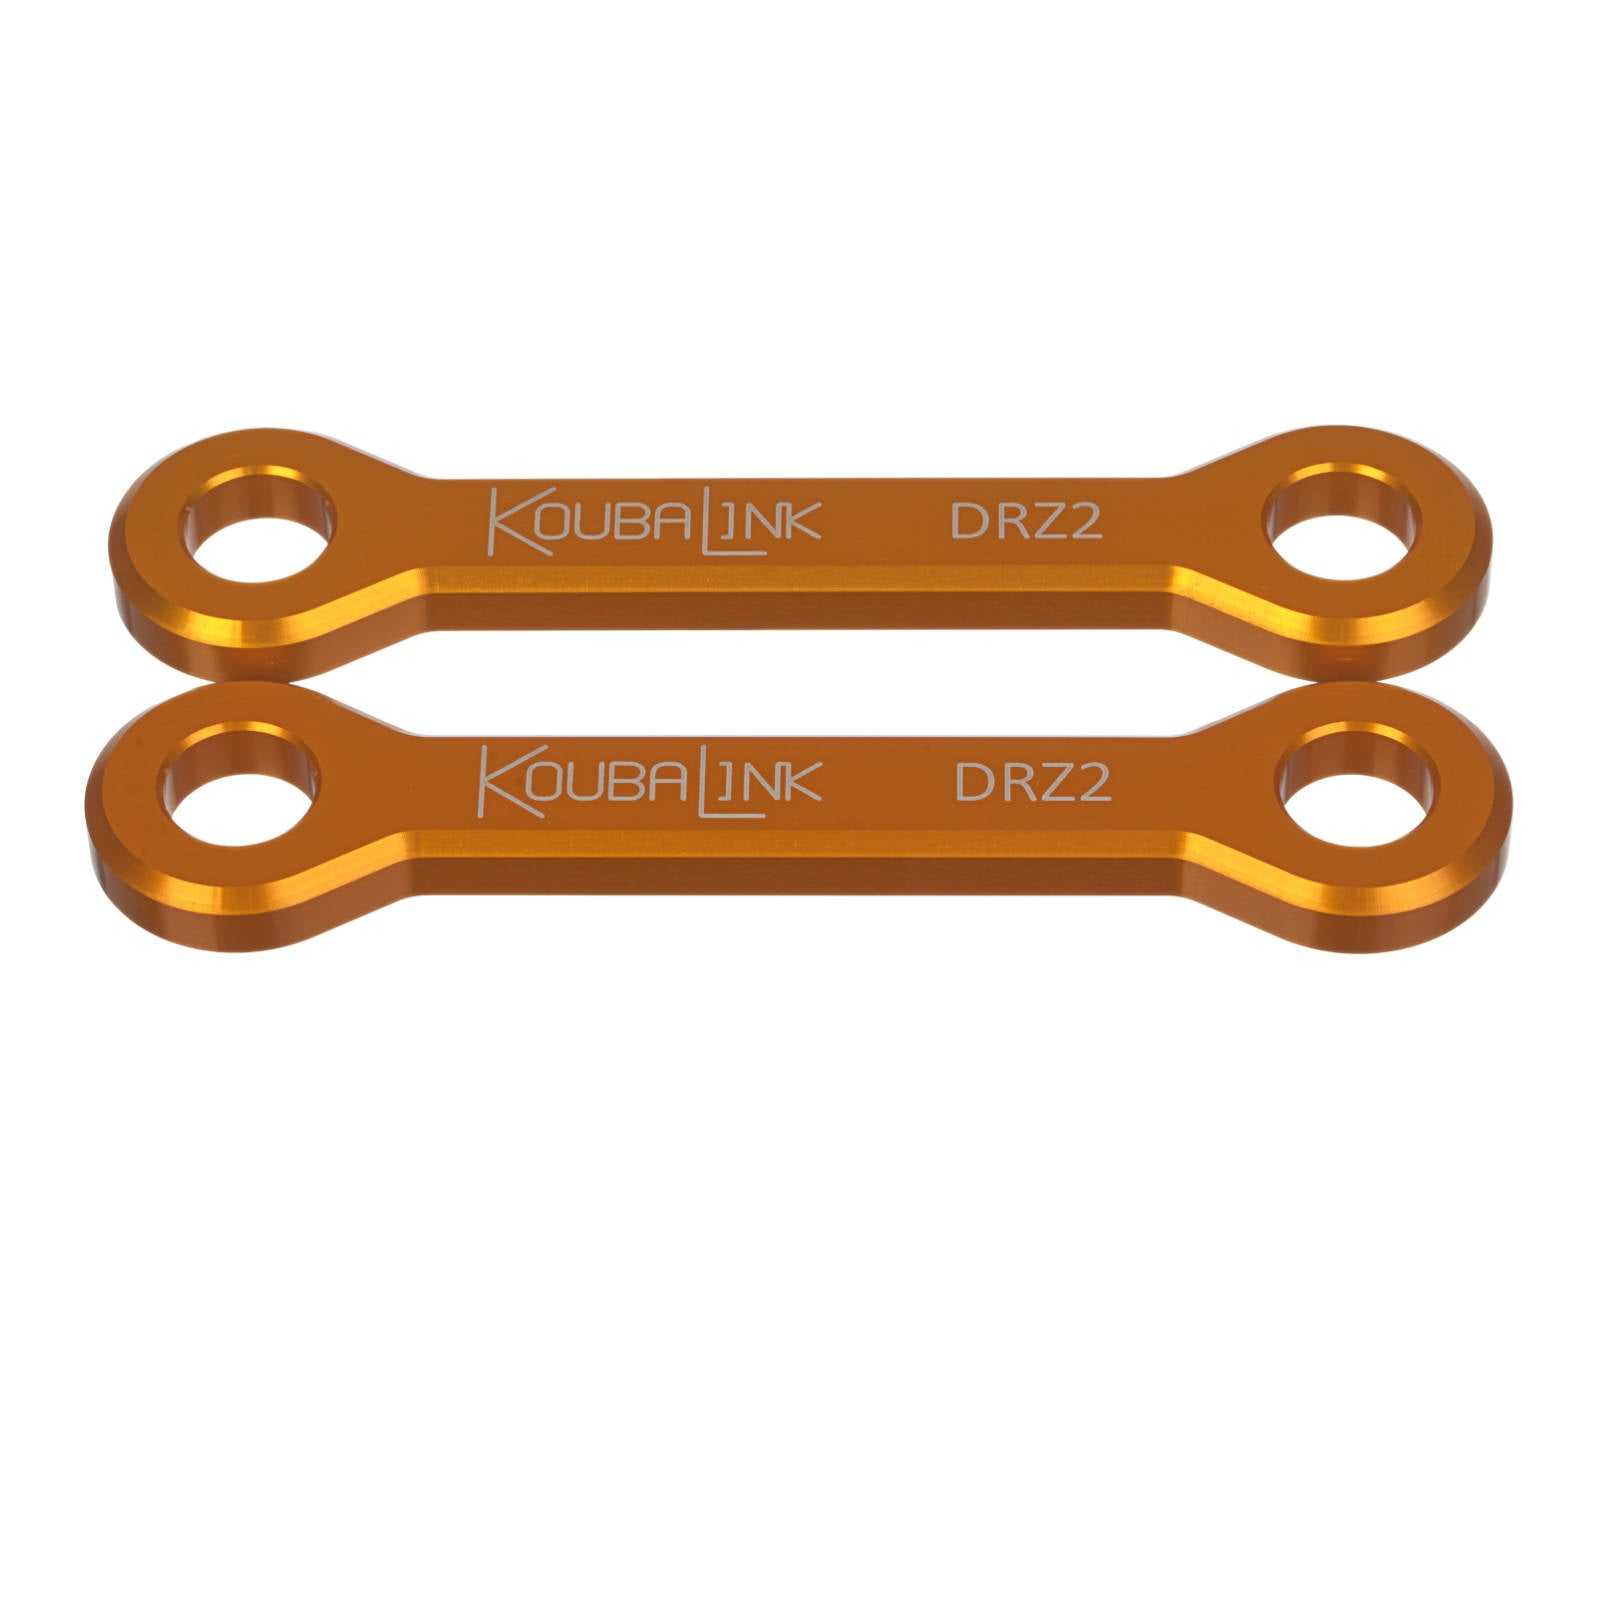 KoubaLink, Koubalink 32mm Tieferlegungsgestänge DRZ2 – Orange